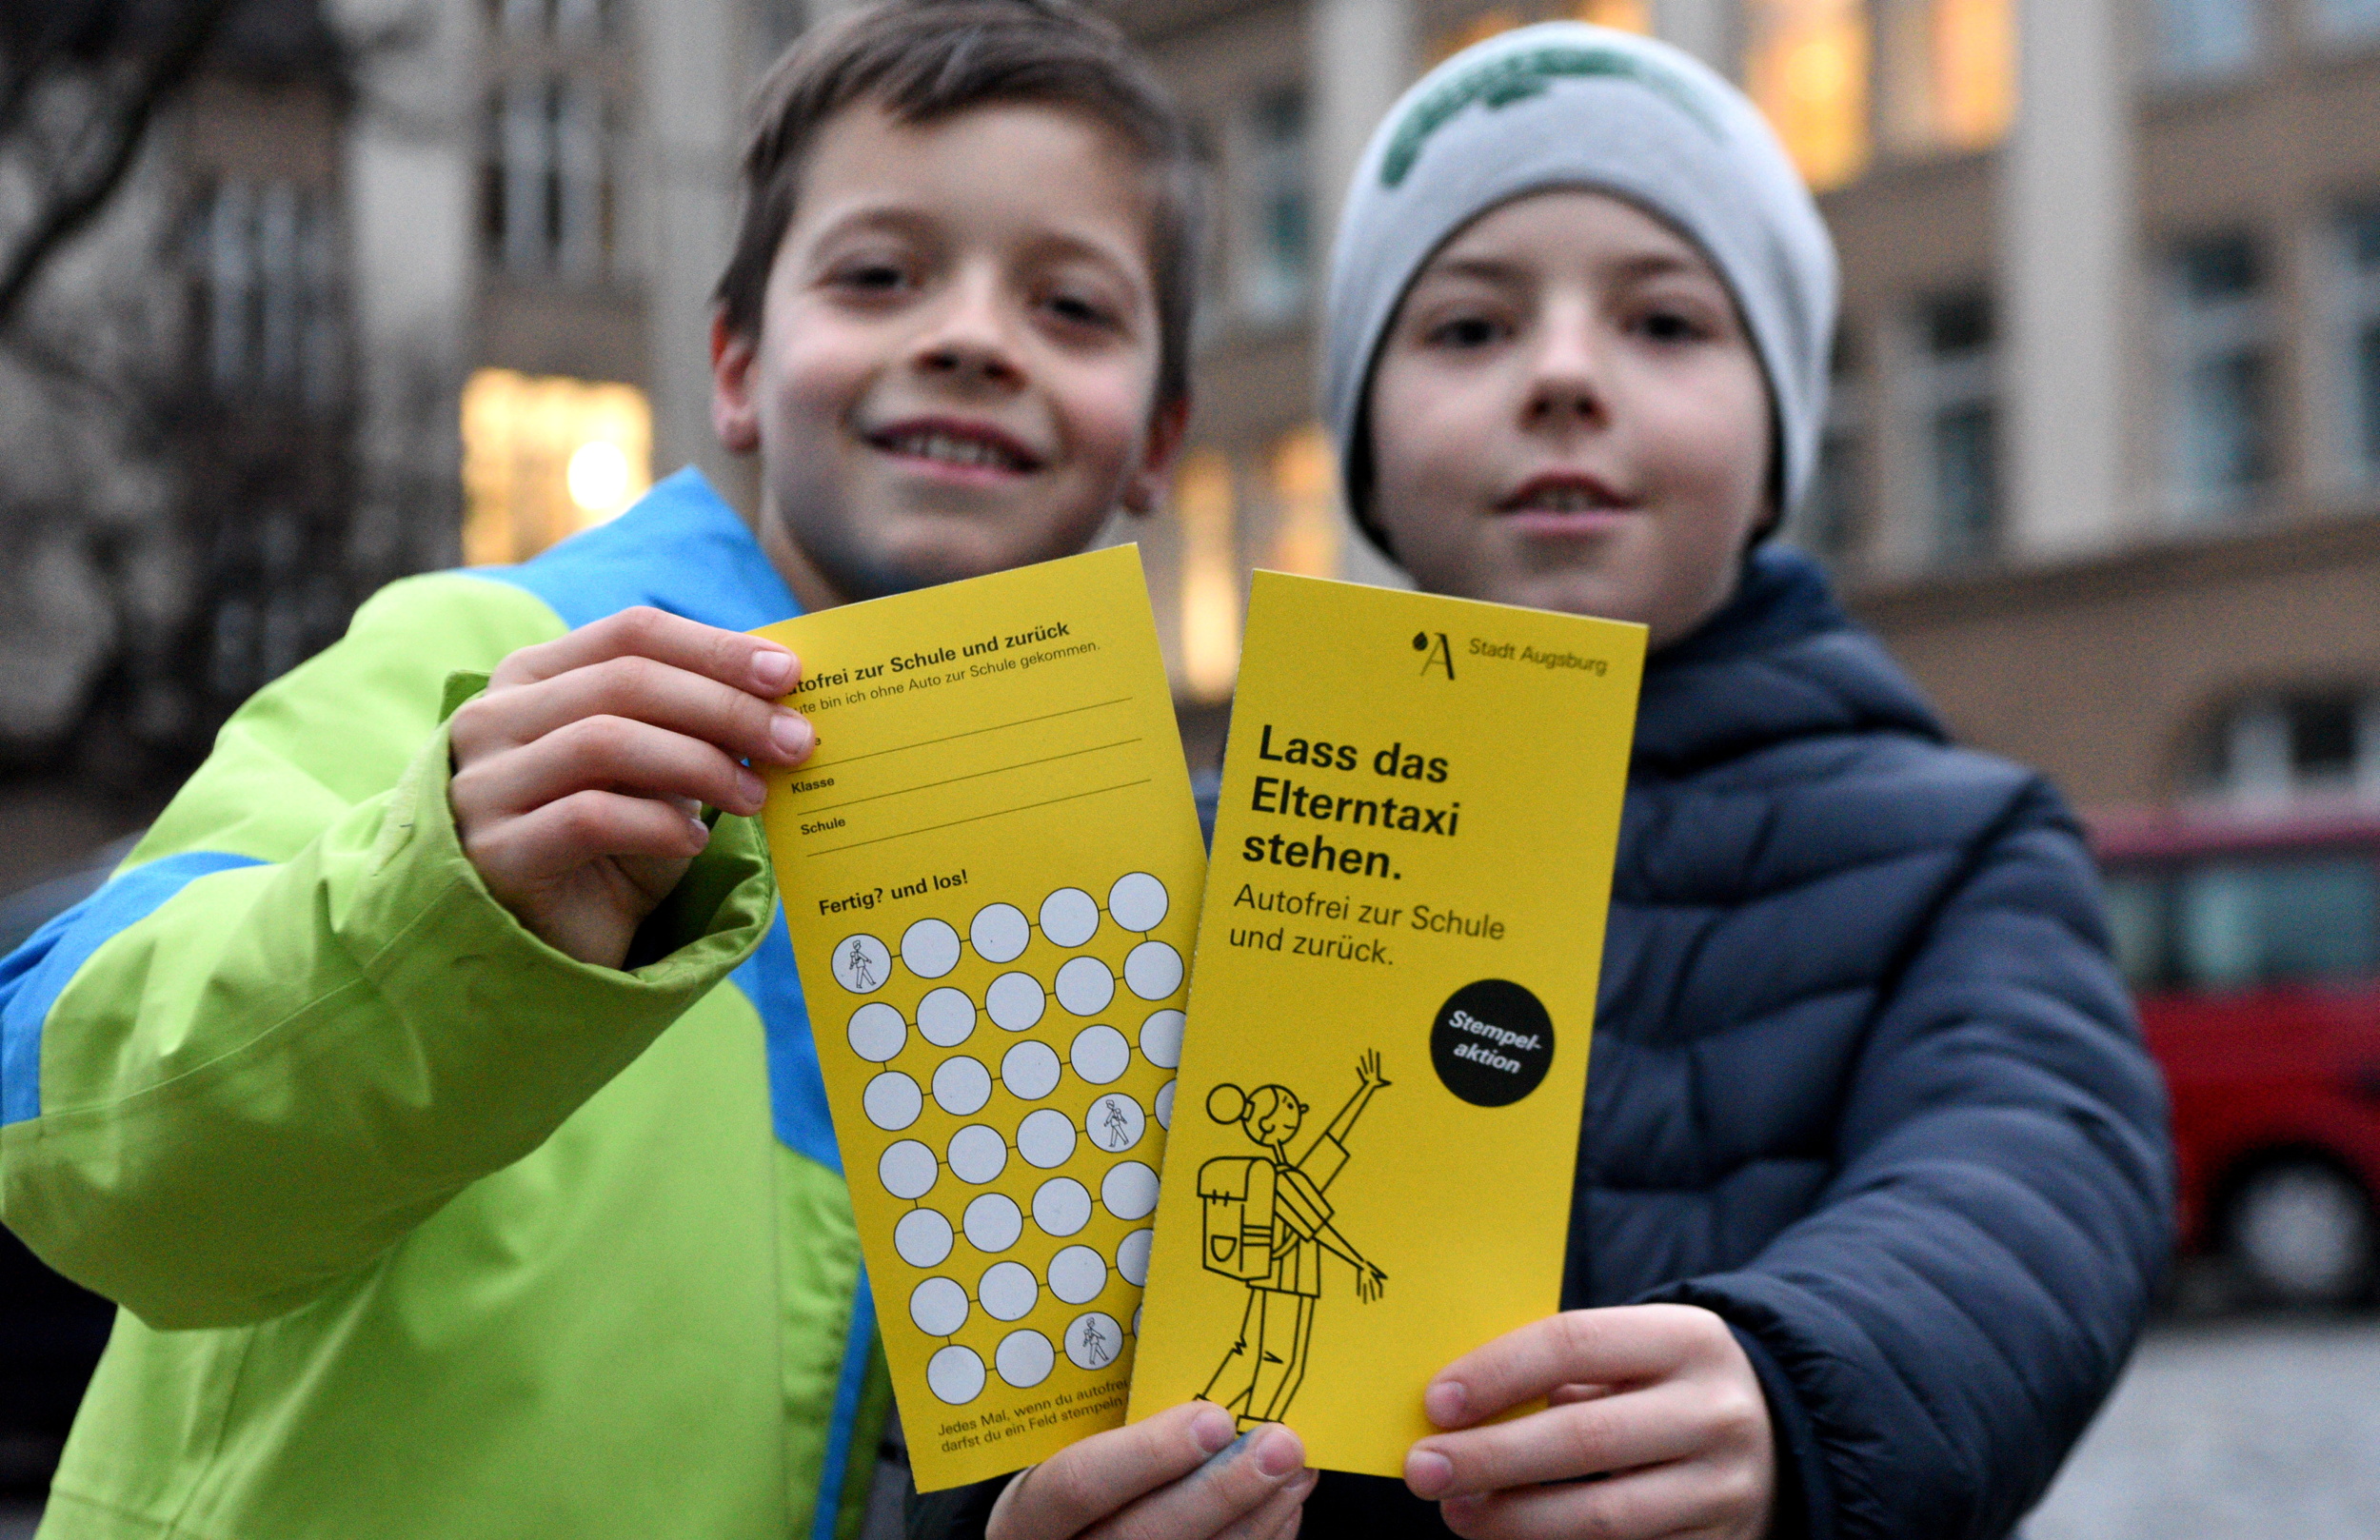 zwei Kinder halten gelbe Stempelkarten mit der Aufschrift "Lass das Elterntaxi Stehen" in die Kamera.